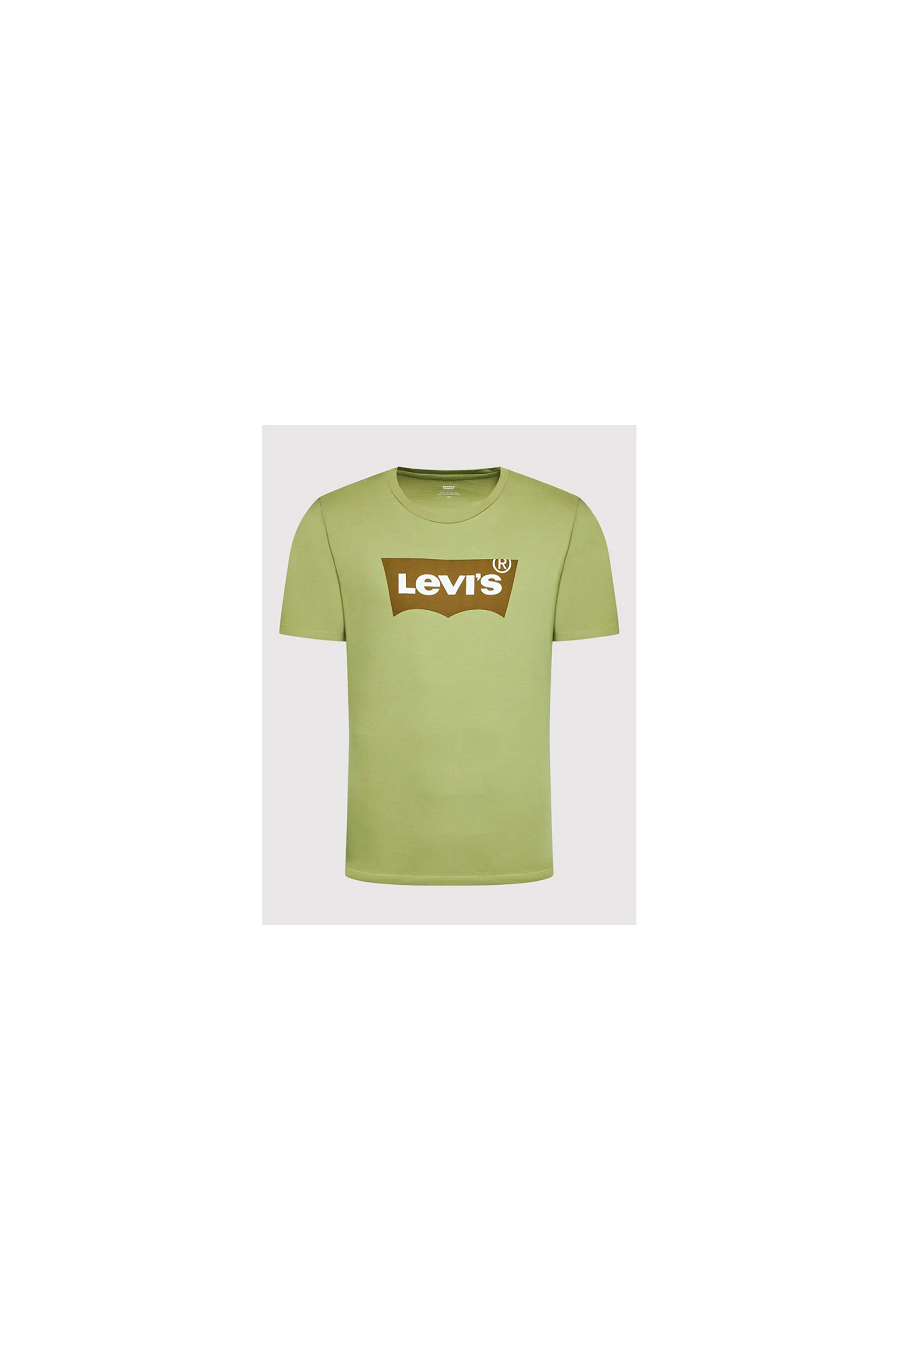 Camiseta Levis Graphic Tees tee